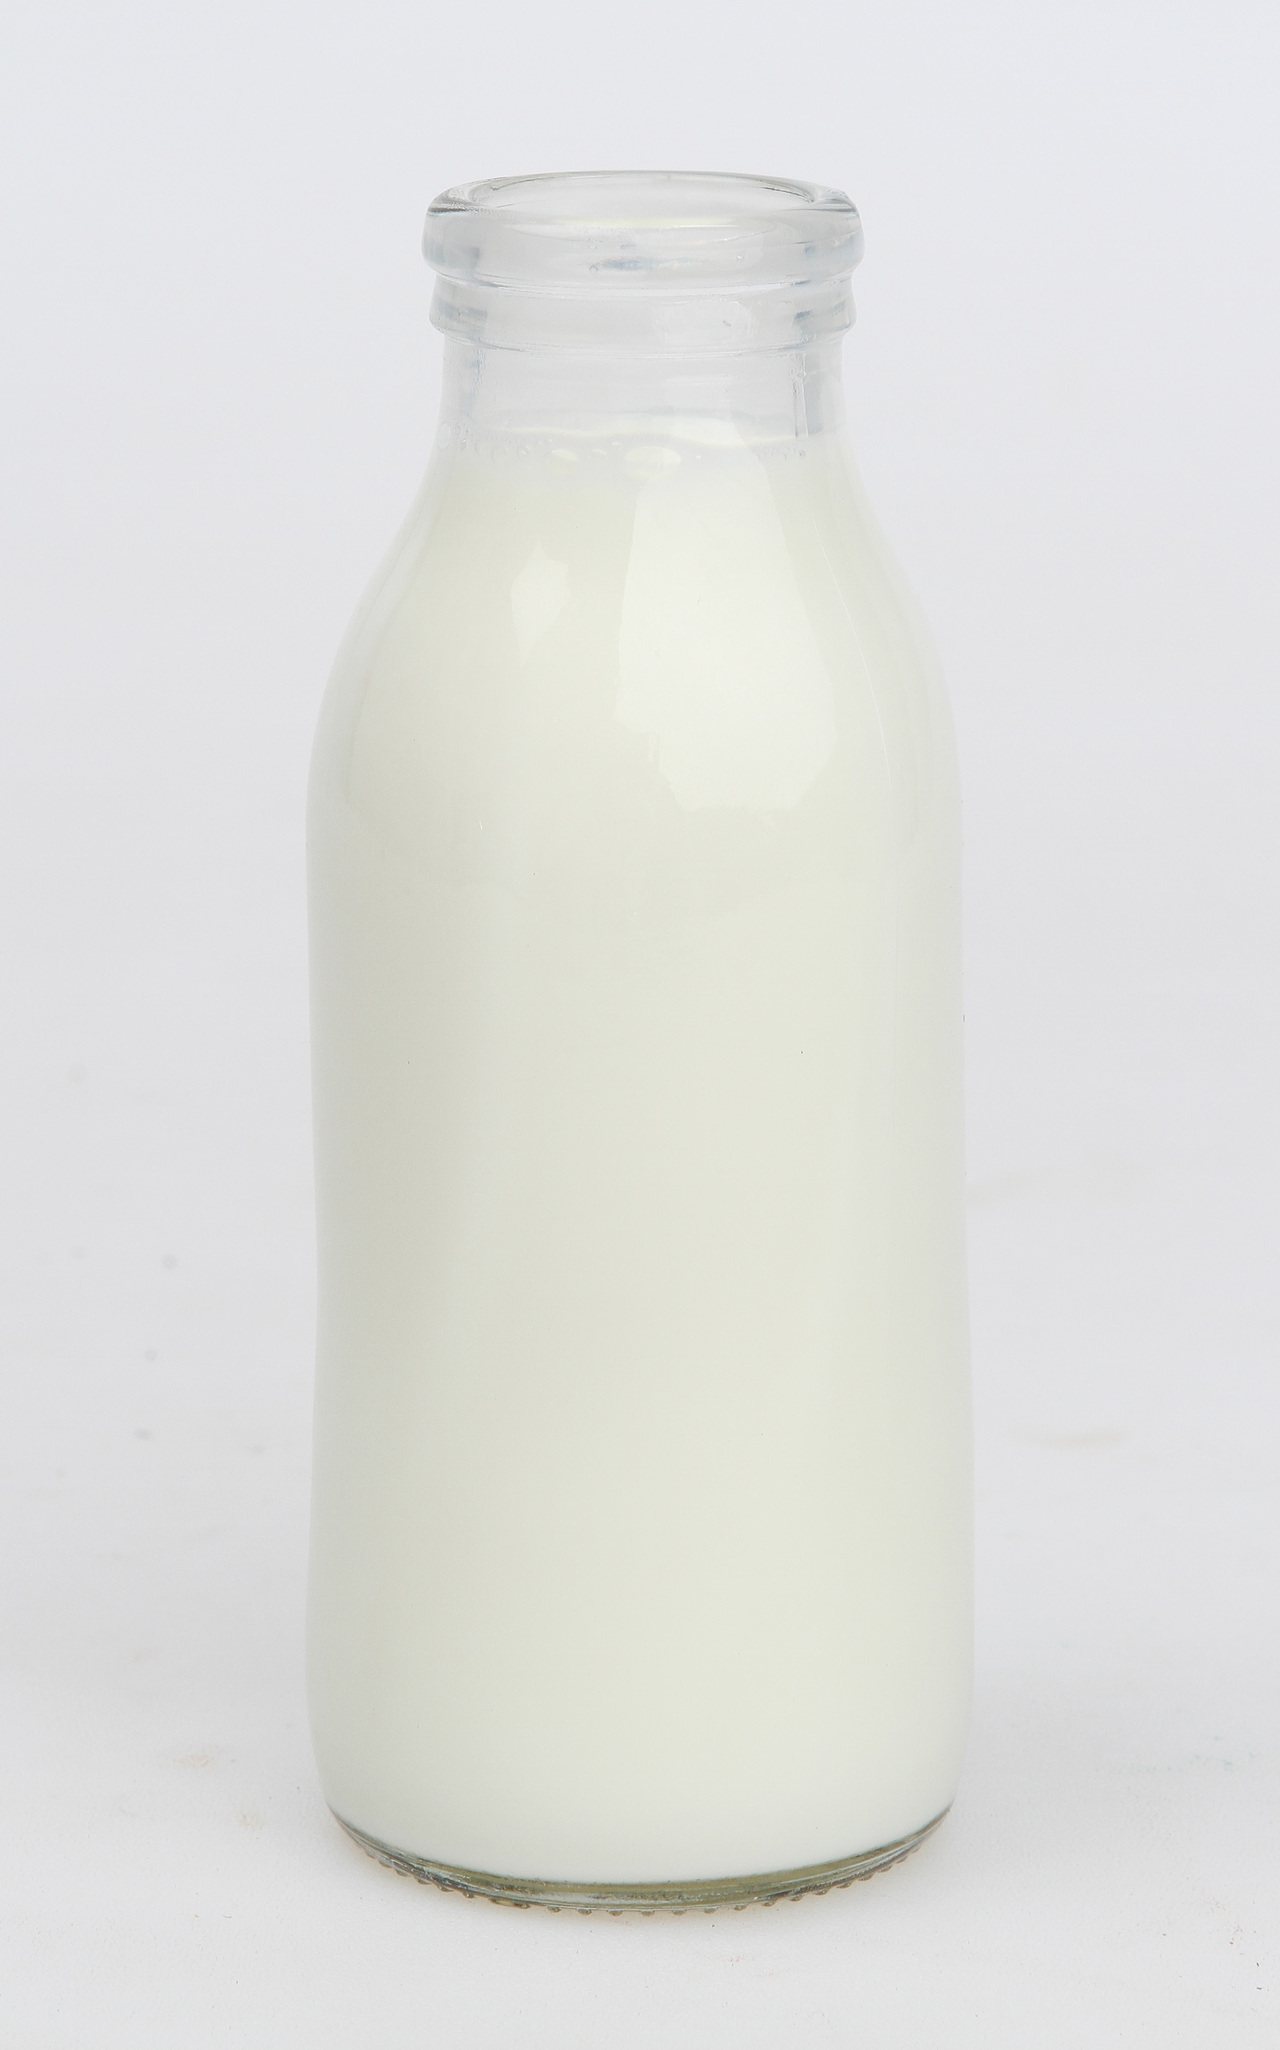 牛奶是許多人的早餐飲品選擇。聯合報系資料照